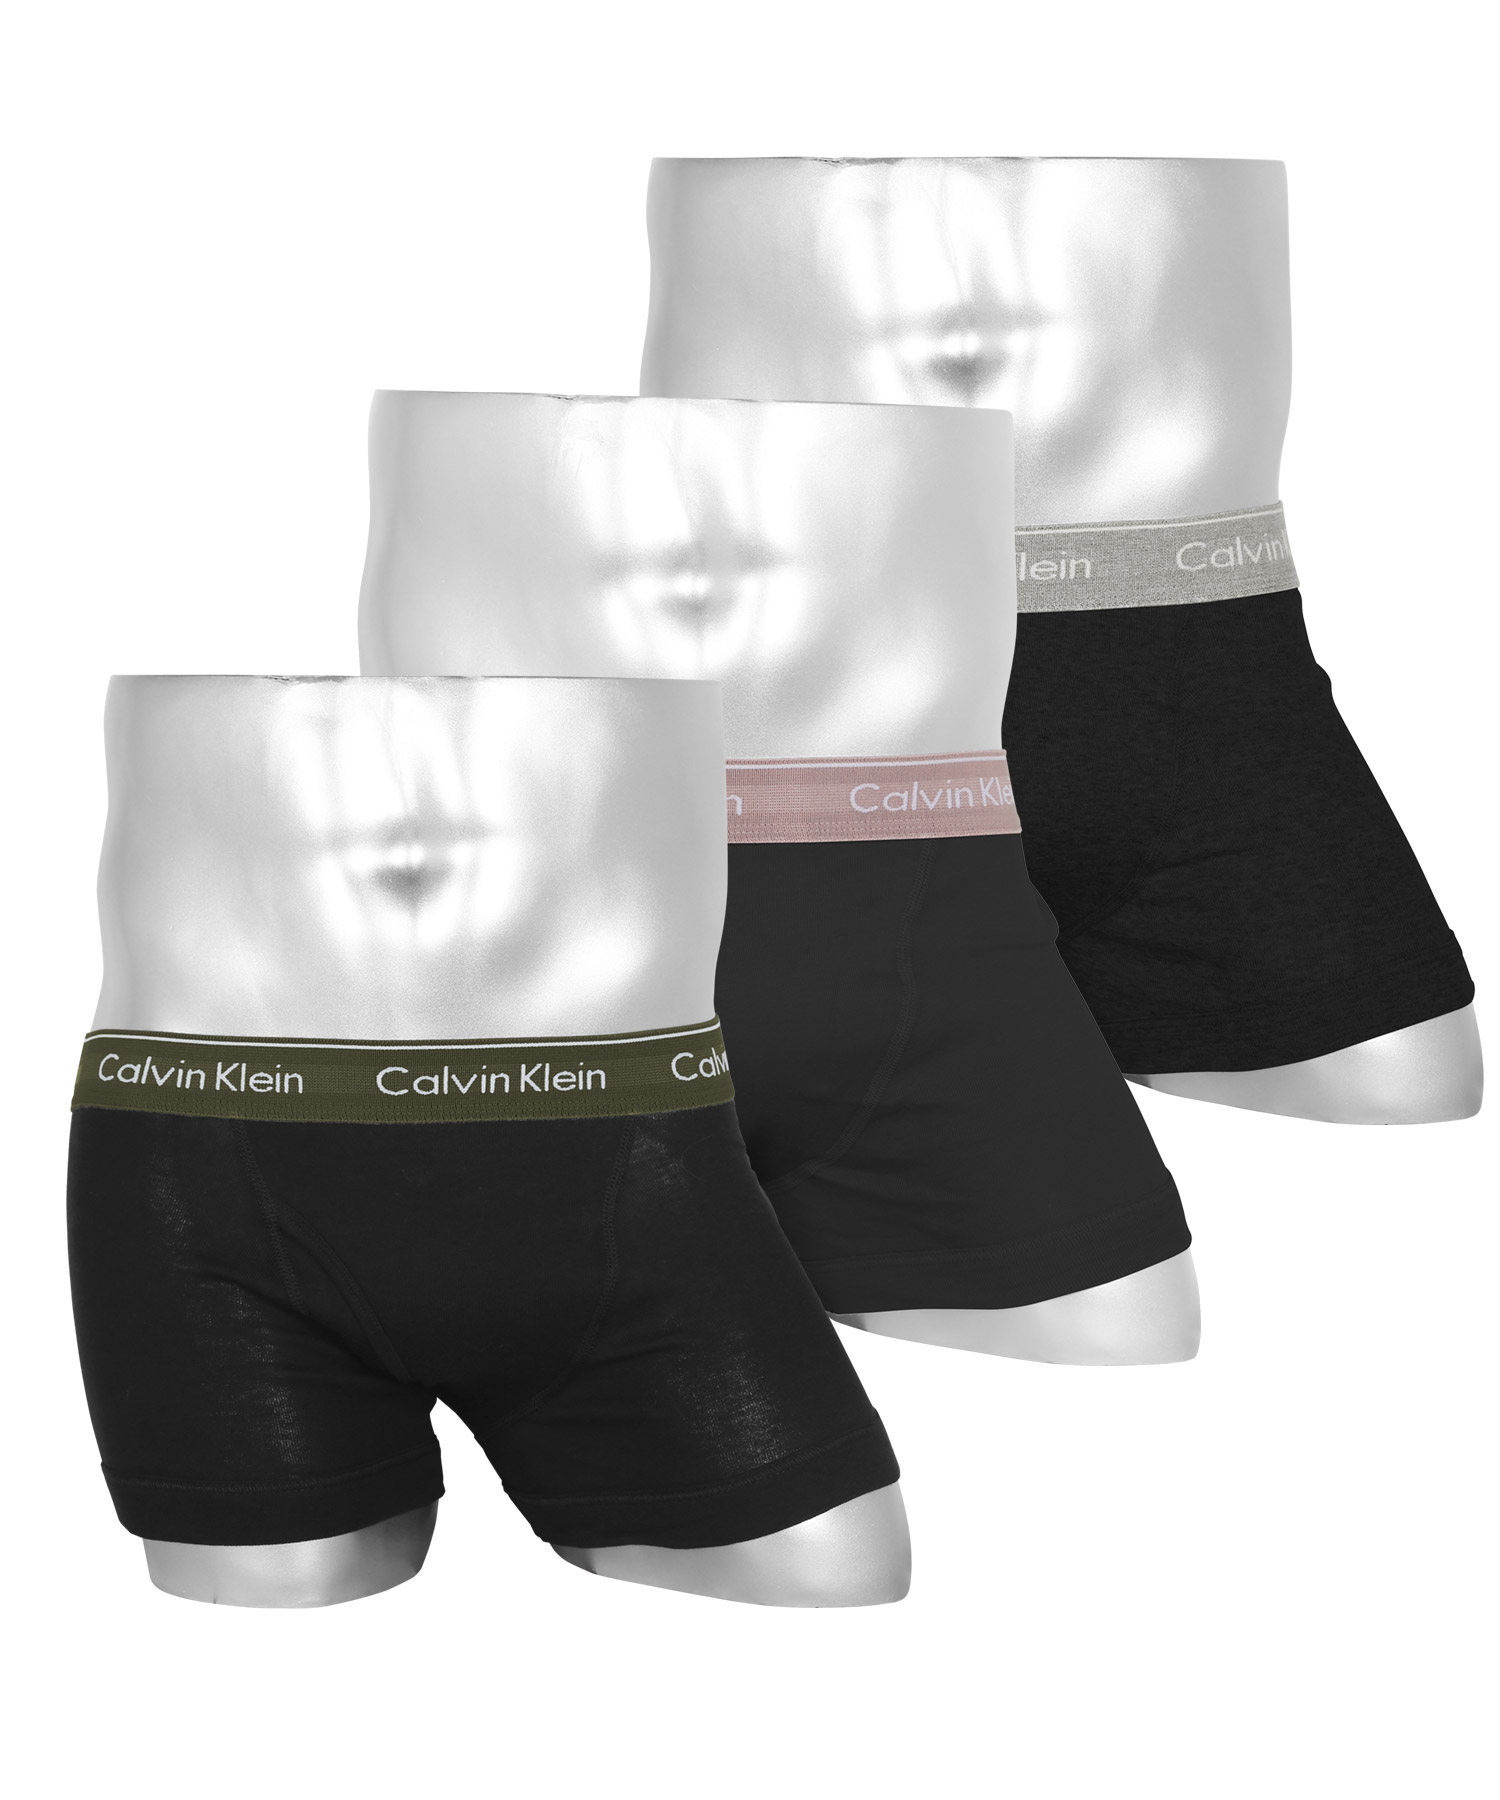 カルバンクライン Calvin Klein ボクサーパンツ 3枚セット メンズ アンダーウェア 男性下着 コットン100% 綿 前開き CK ロゴ  高級 ハイブランド